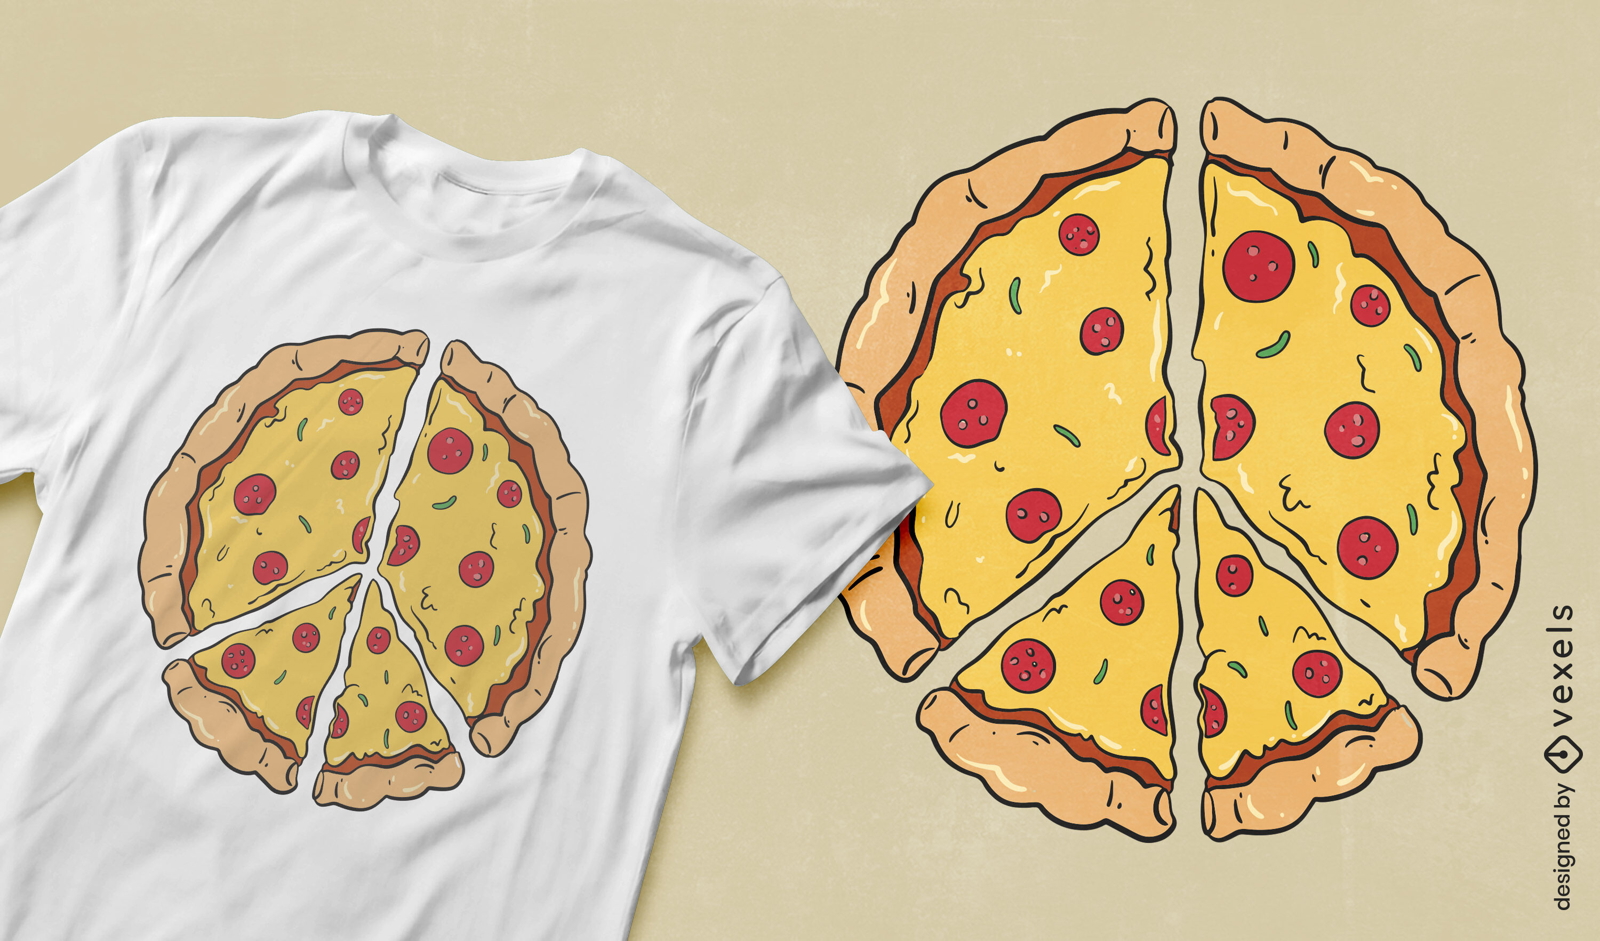 Dise?o de camiseta de pizza de paz.